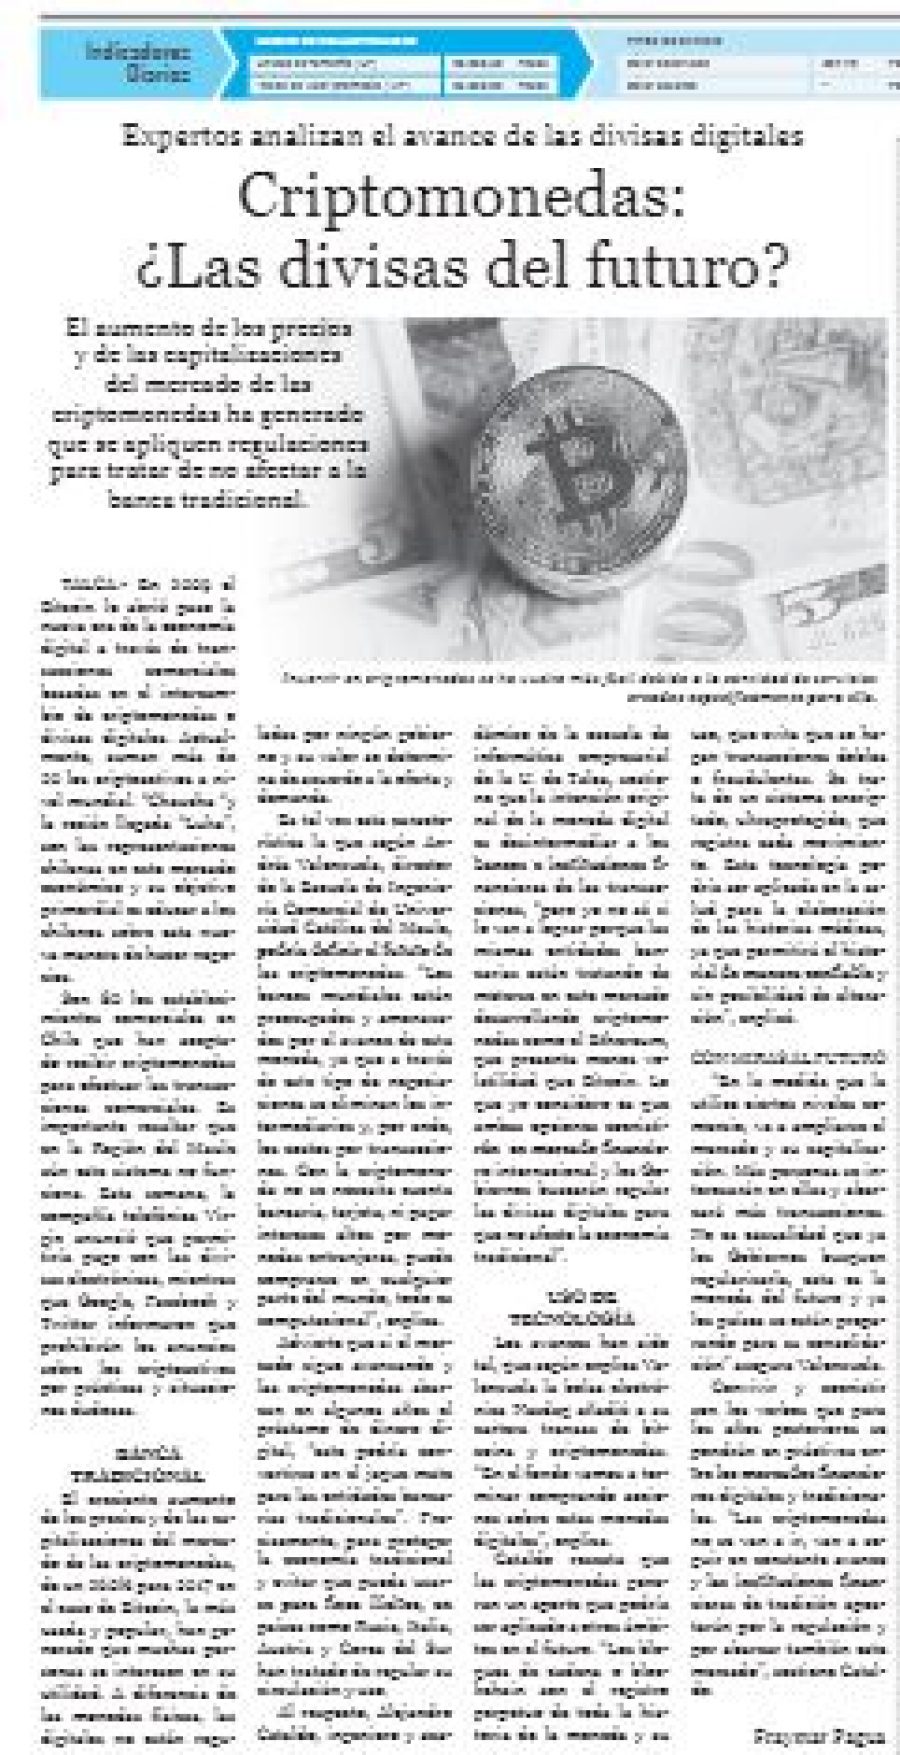 23 de marzo en Diario El Centro: “Criptomonedas: ¿Las divisas del futuro?”